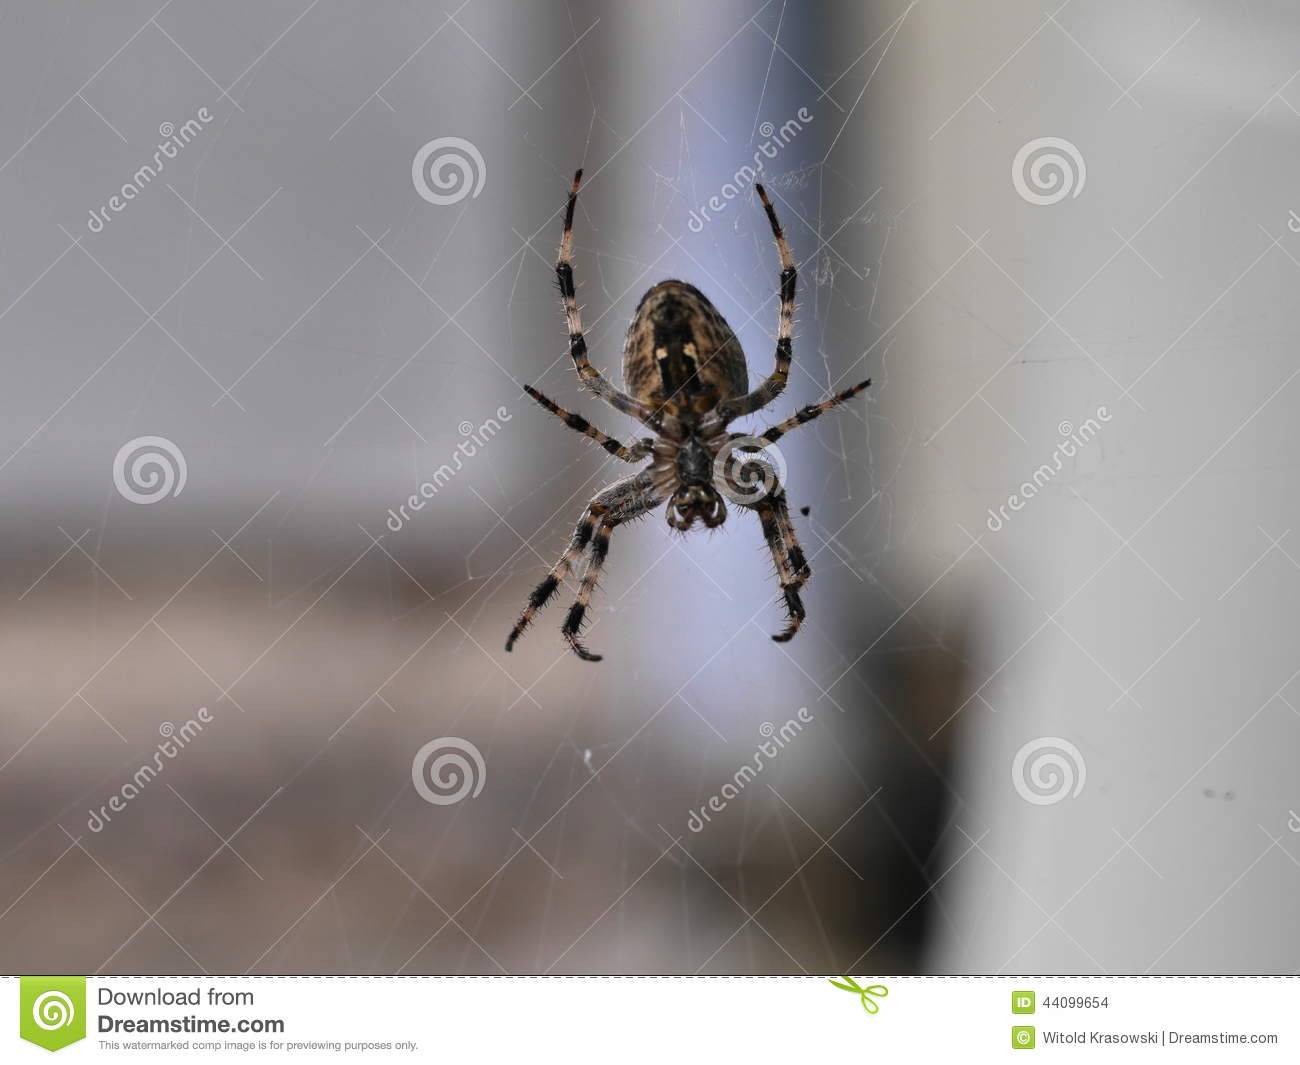 Опасен ли для человека укус паука-крестовика обыкновенного